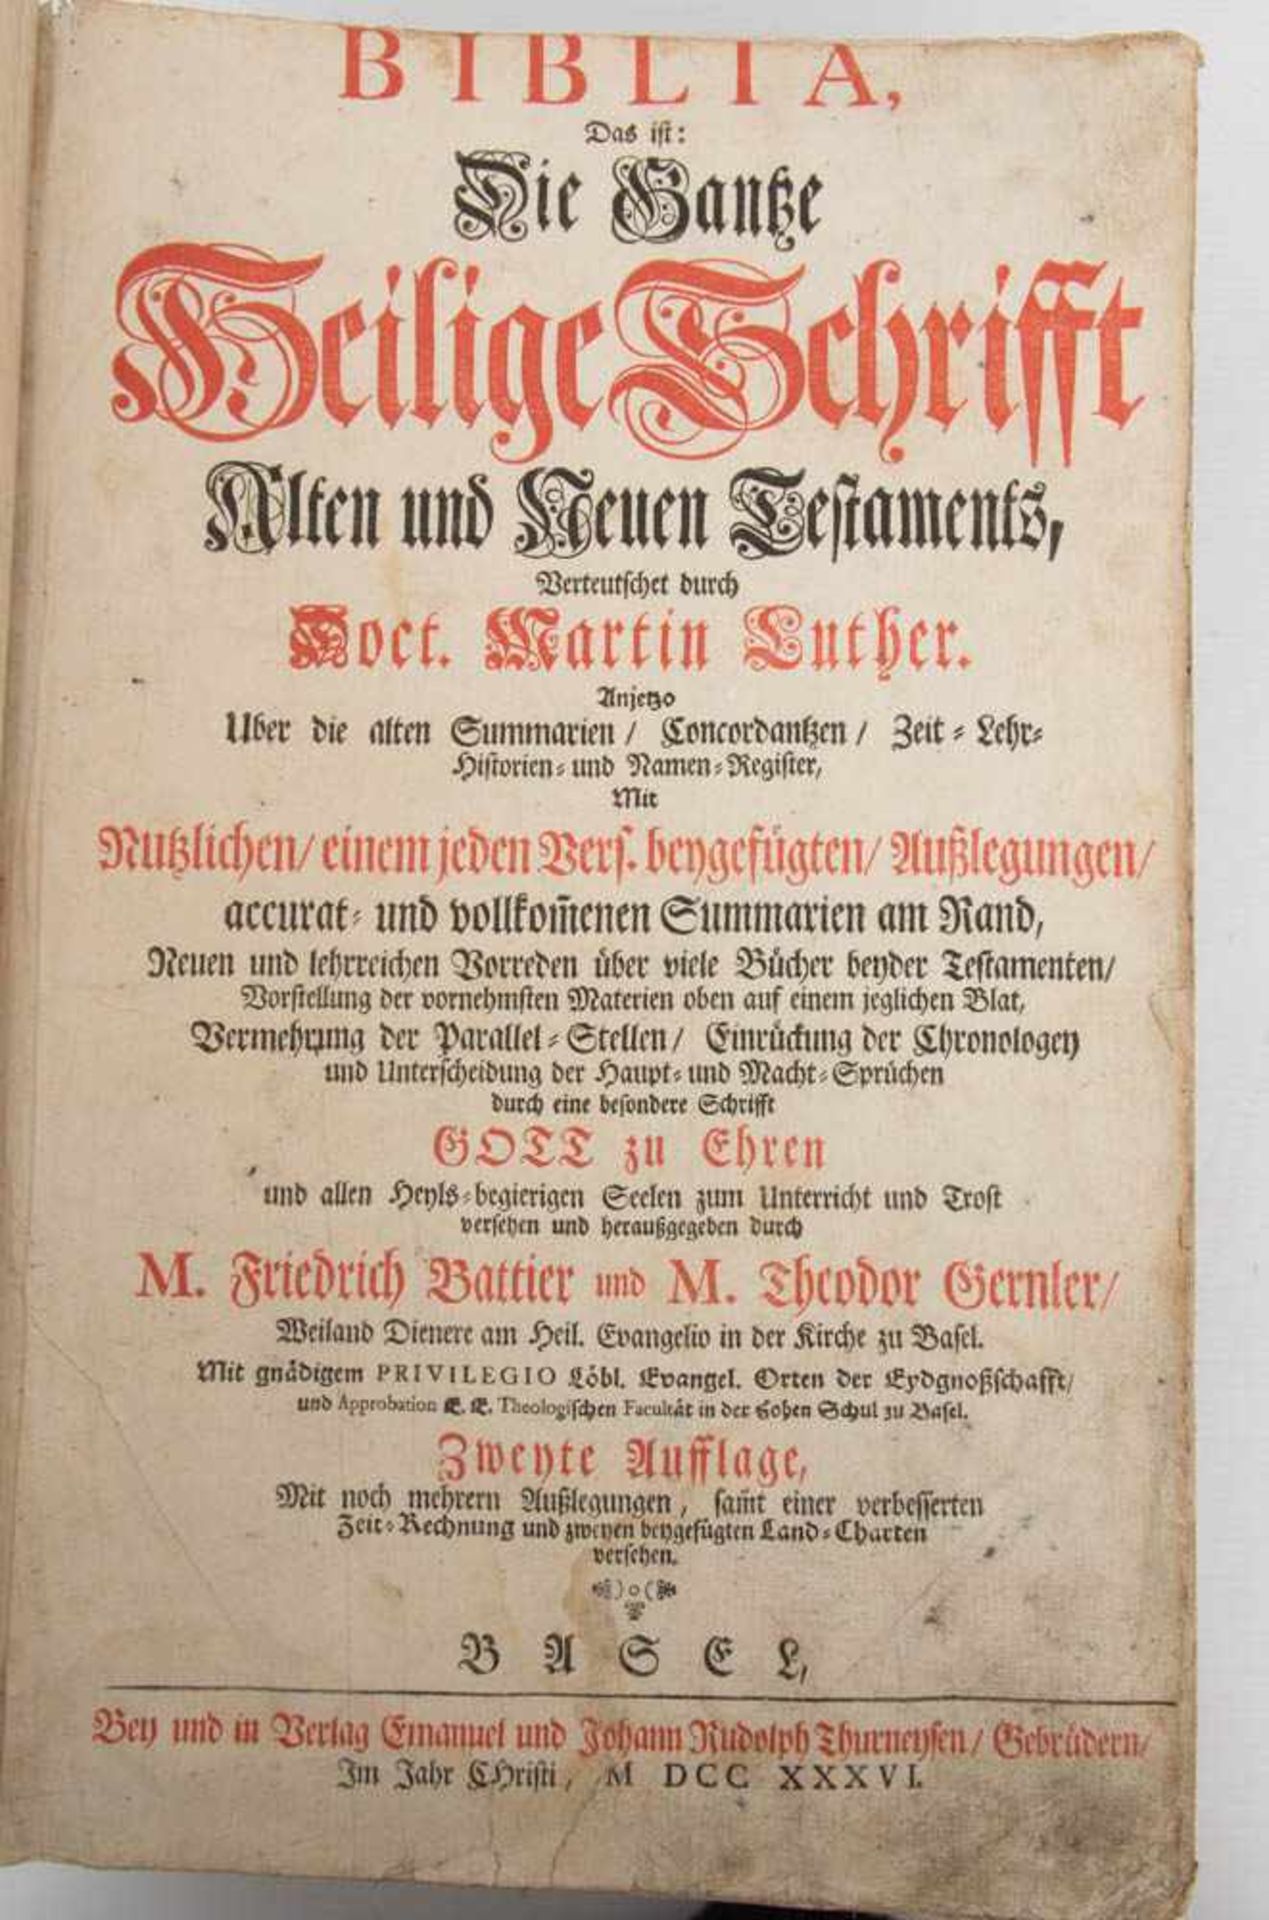 BIBLIA, altes und neues Testament, Hg. Friedrich Battier u. Theodor Gernler, Deutschland, 1736. - Bild 5 aus 6